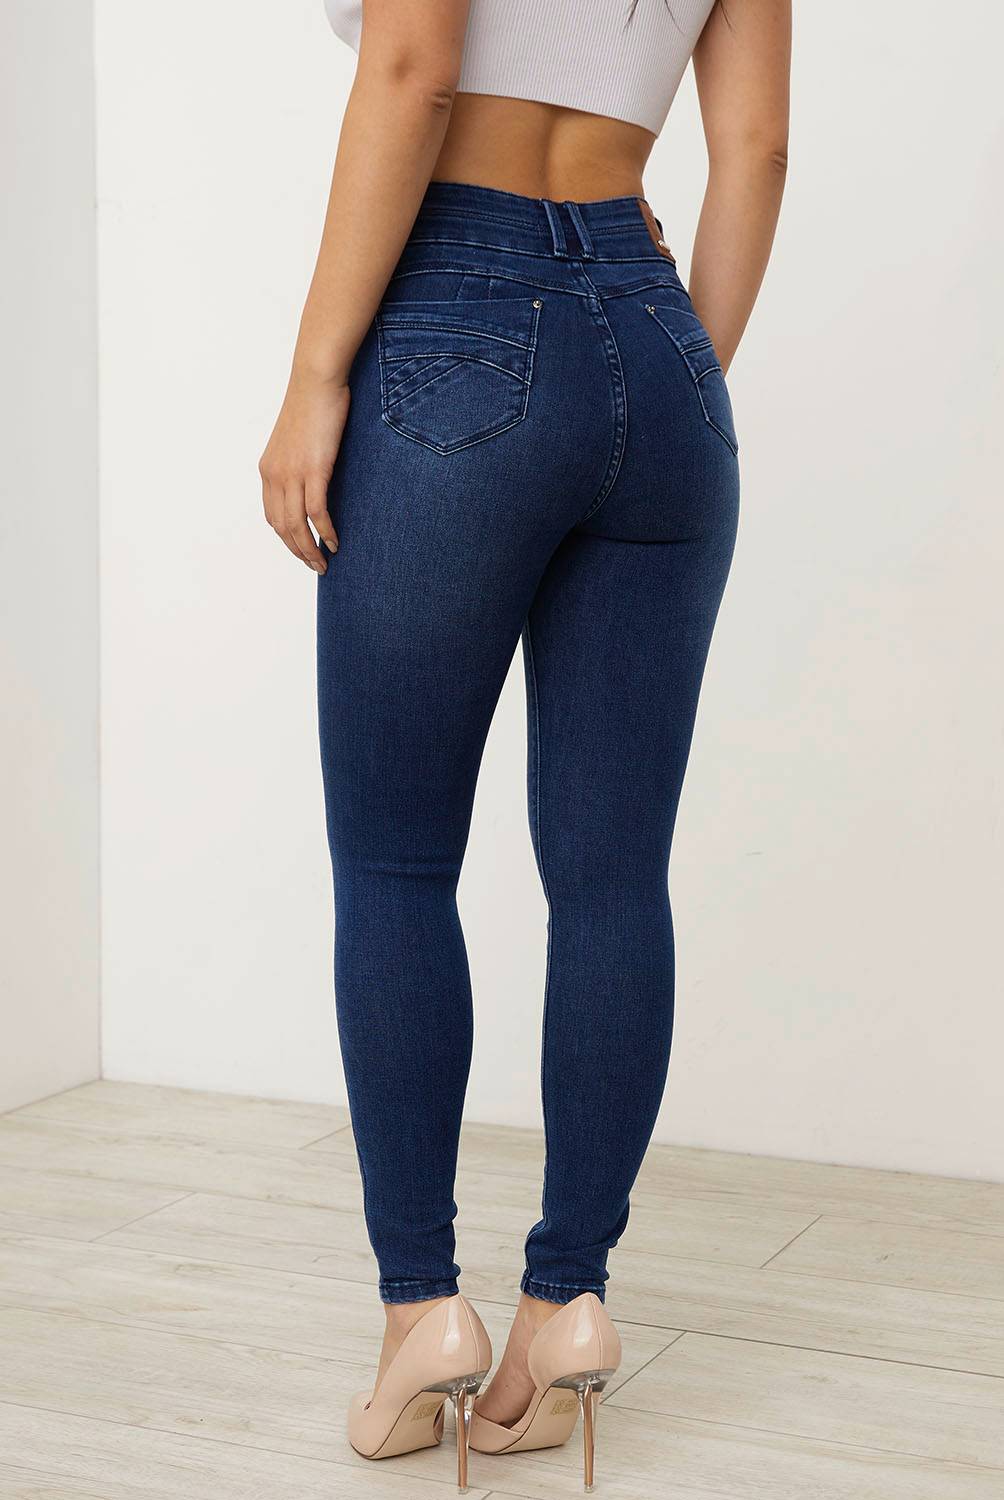 MOSSIMO - Jeans Skinny Tiro Alto Mujer Mossimo